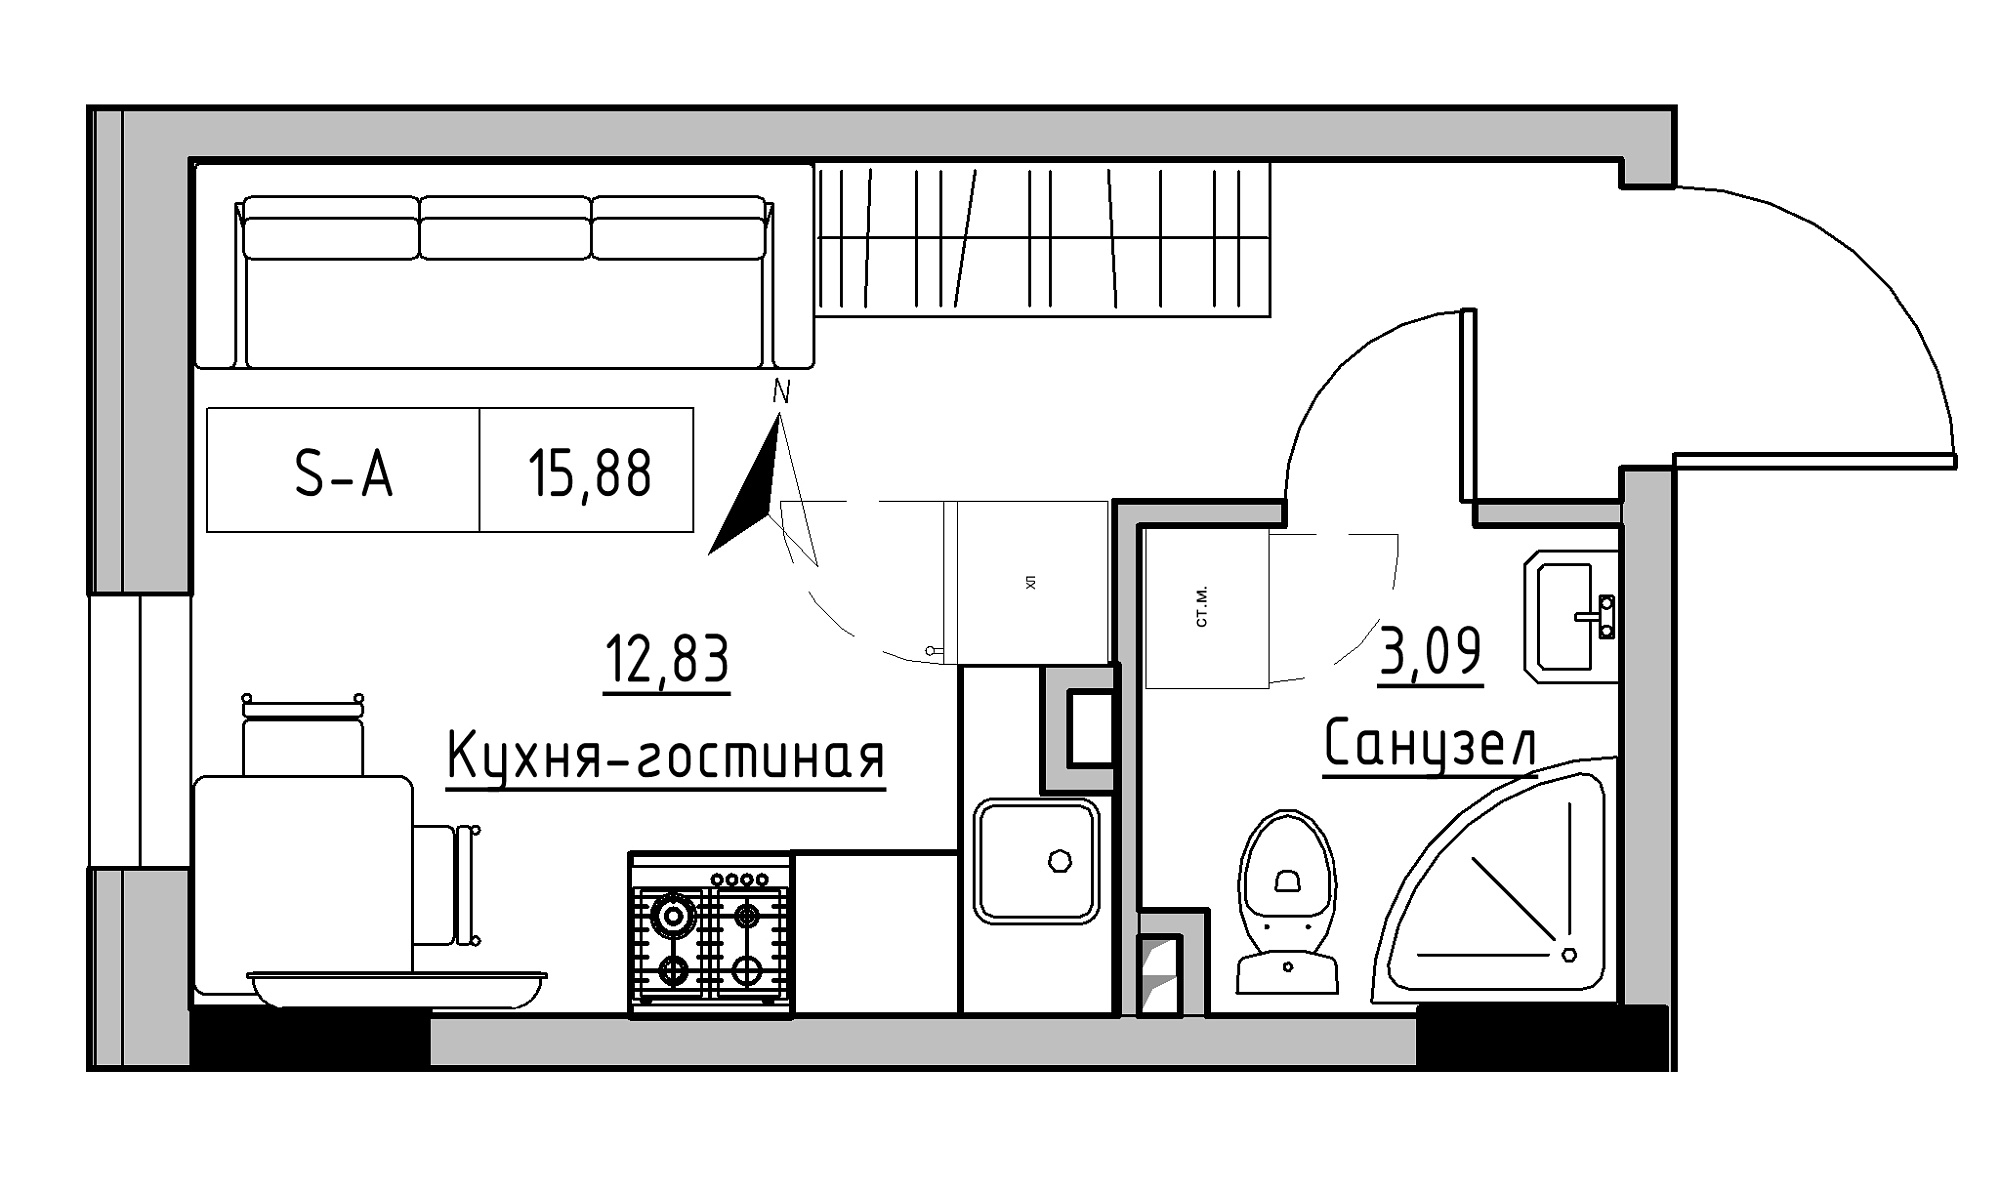 Планування Smart-квартира площею 15.88м2, KS-025-01/0005.